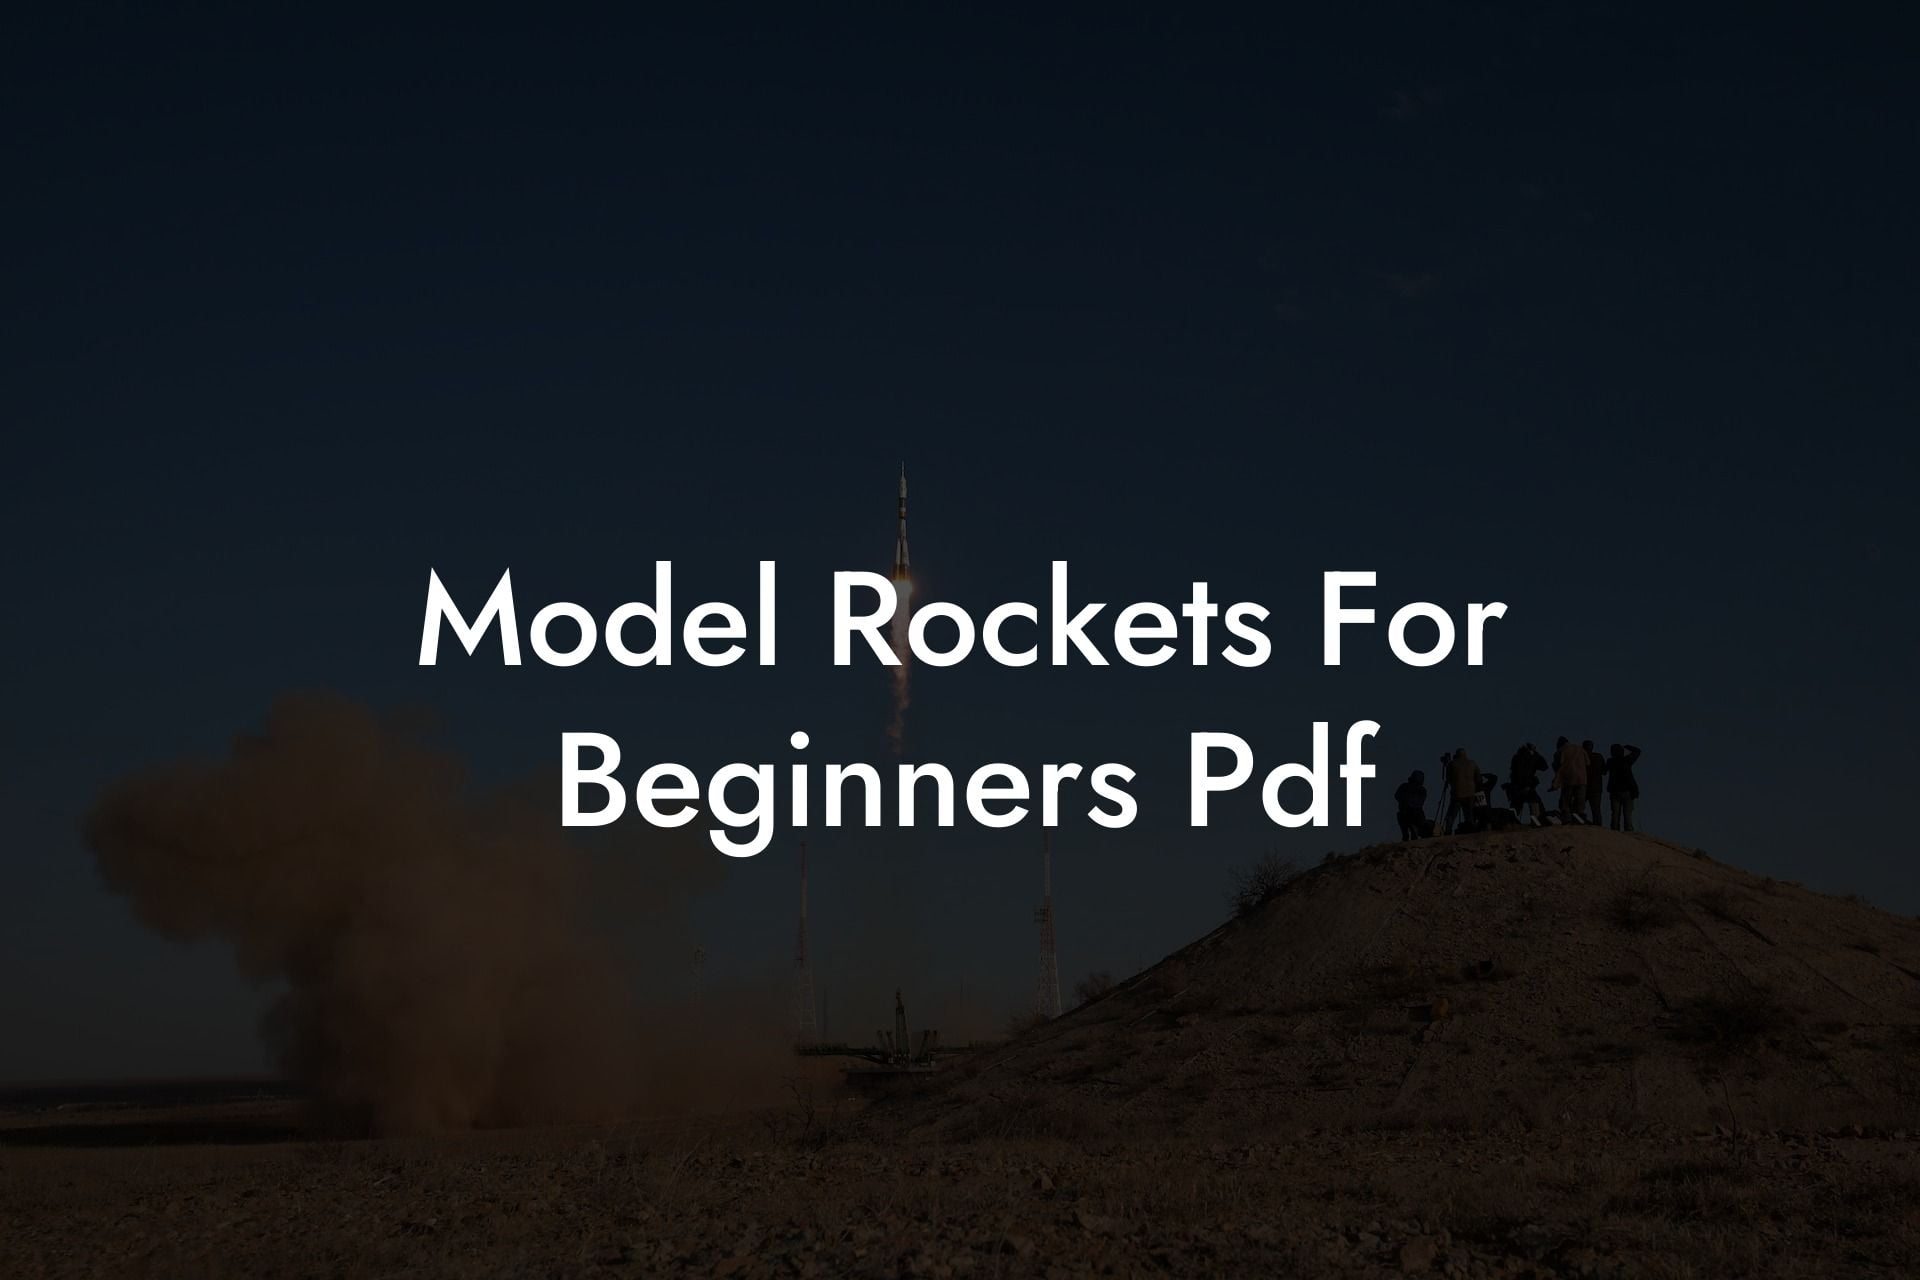 Model Rockets For Beginners Pdf